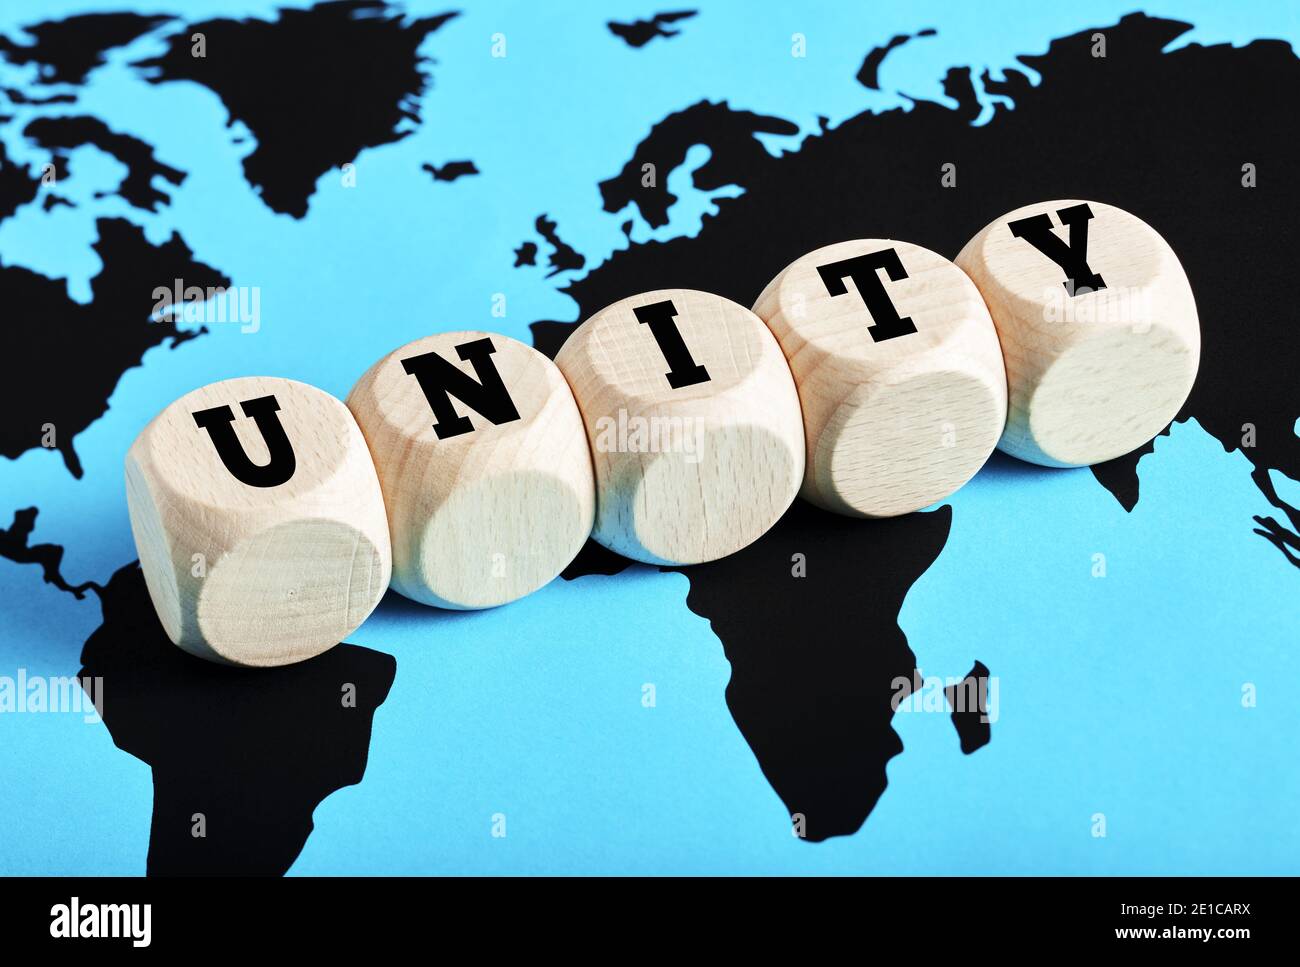 Das Wort Einheit geschrieben auf Holzwürfel auf Weltkarte Hintergrund. Internationale Teamarbeit, Allianz, Zusammenarbeit oder Kommunikation rund um den Globus Stockfoto